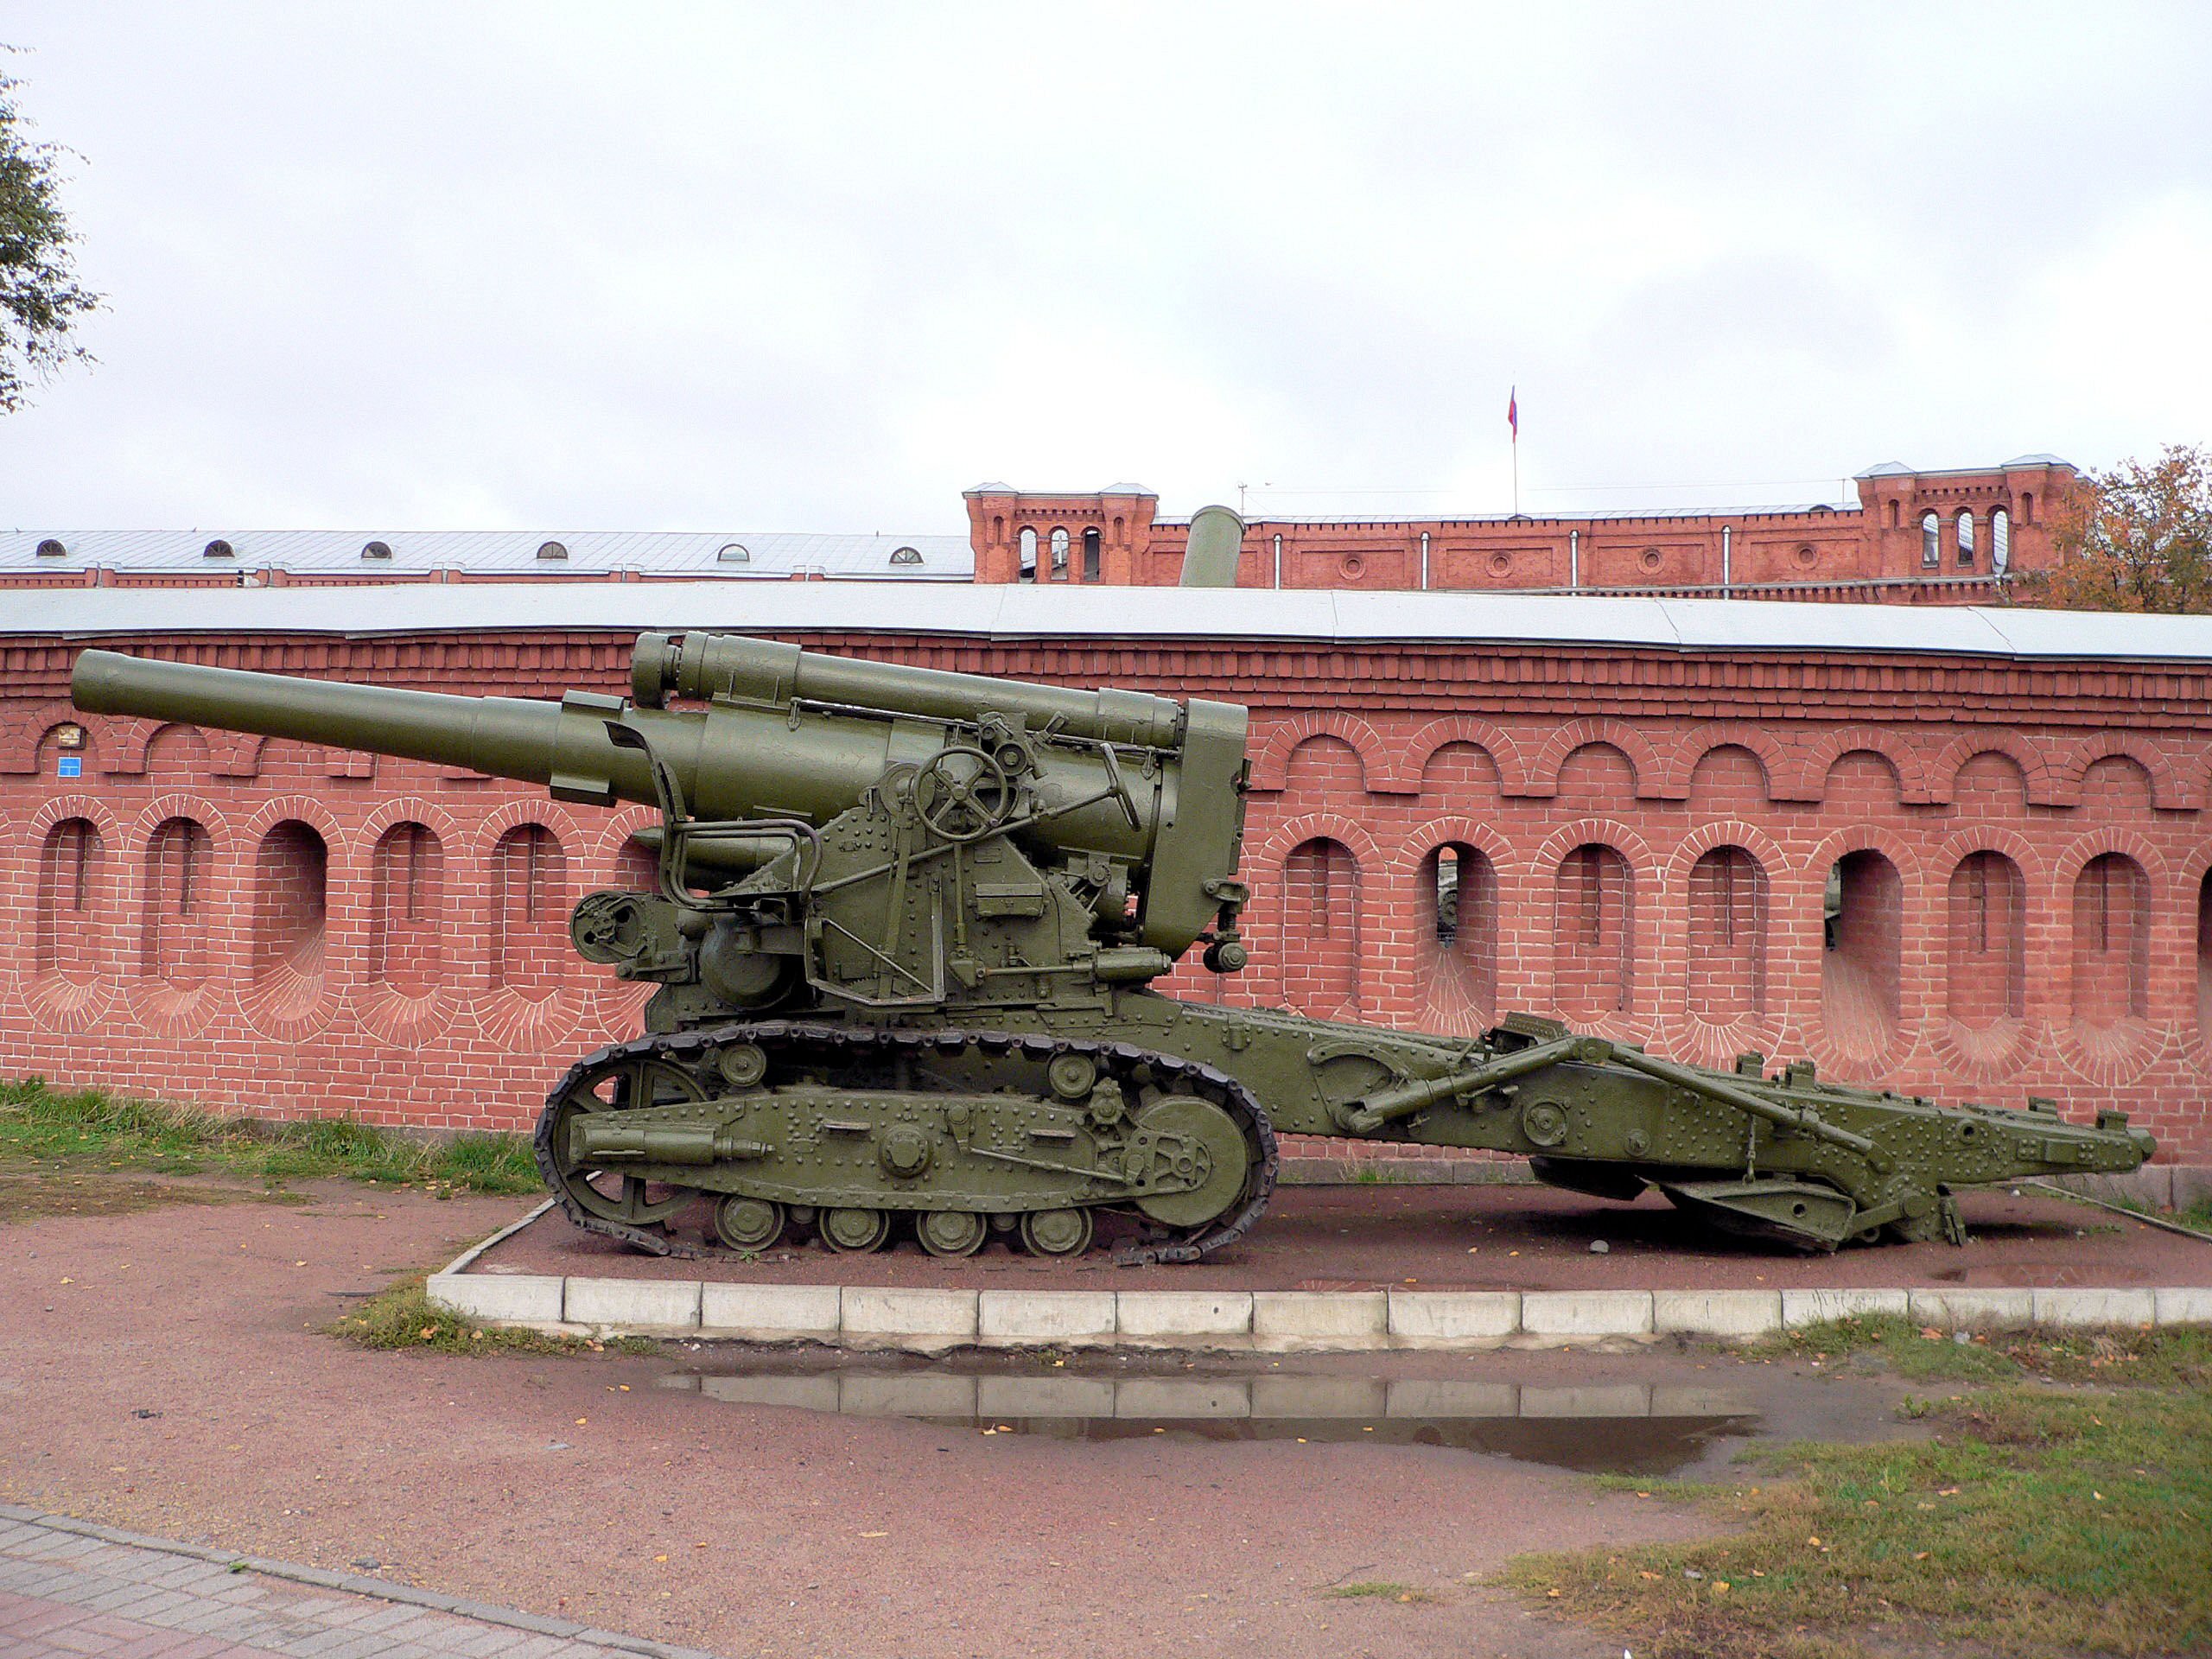 Б 4 6. Кувалда Сталина 203-мм гаубица. Советская 203-мм. Гаубица б-4. 203-Мм гаубица б-4м. Сталинская Кувалда 203-мм гаубица б-4.